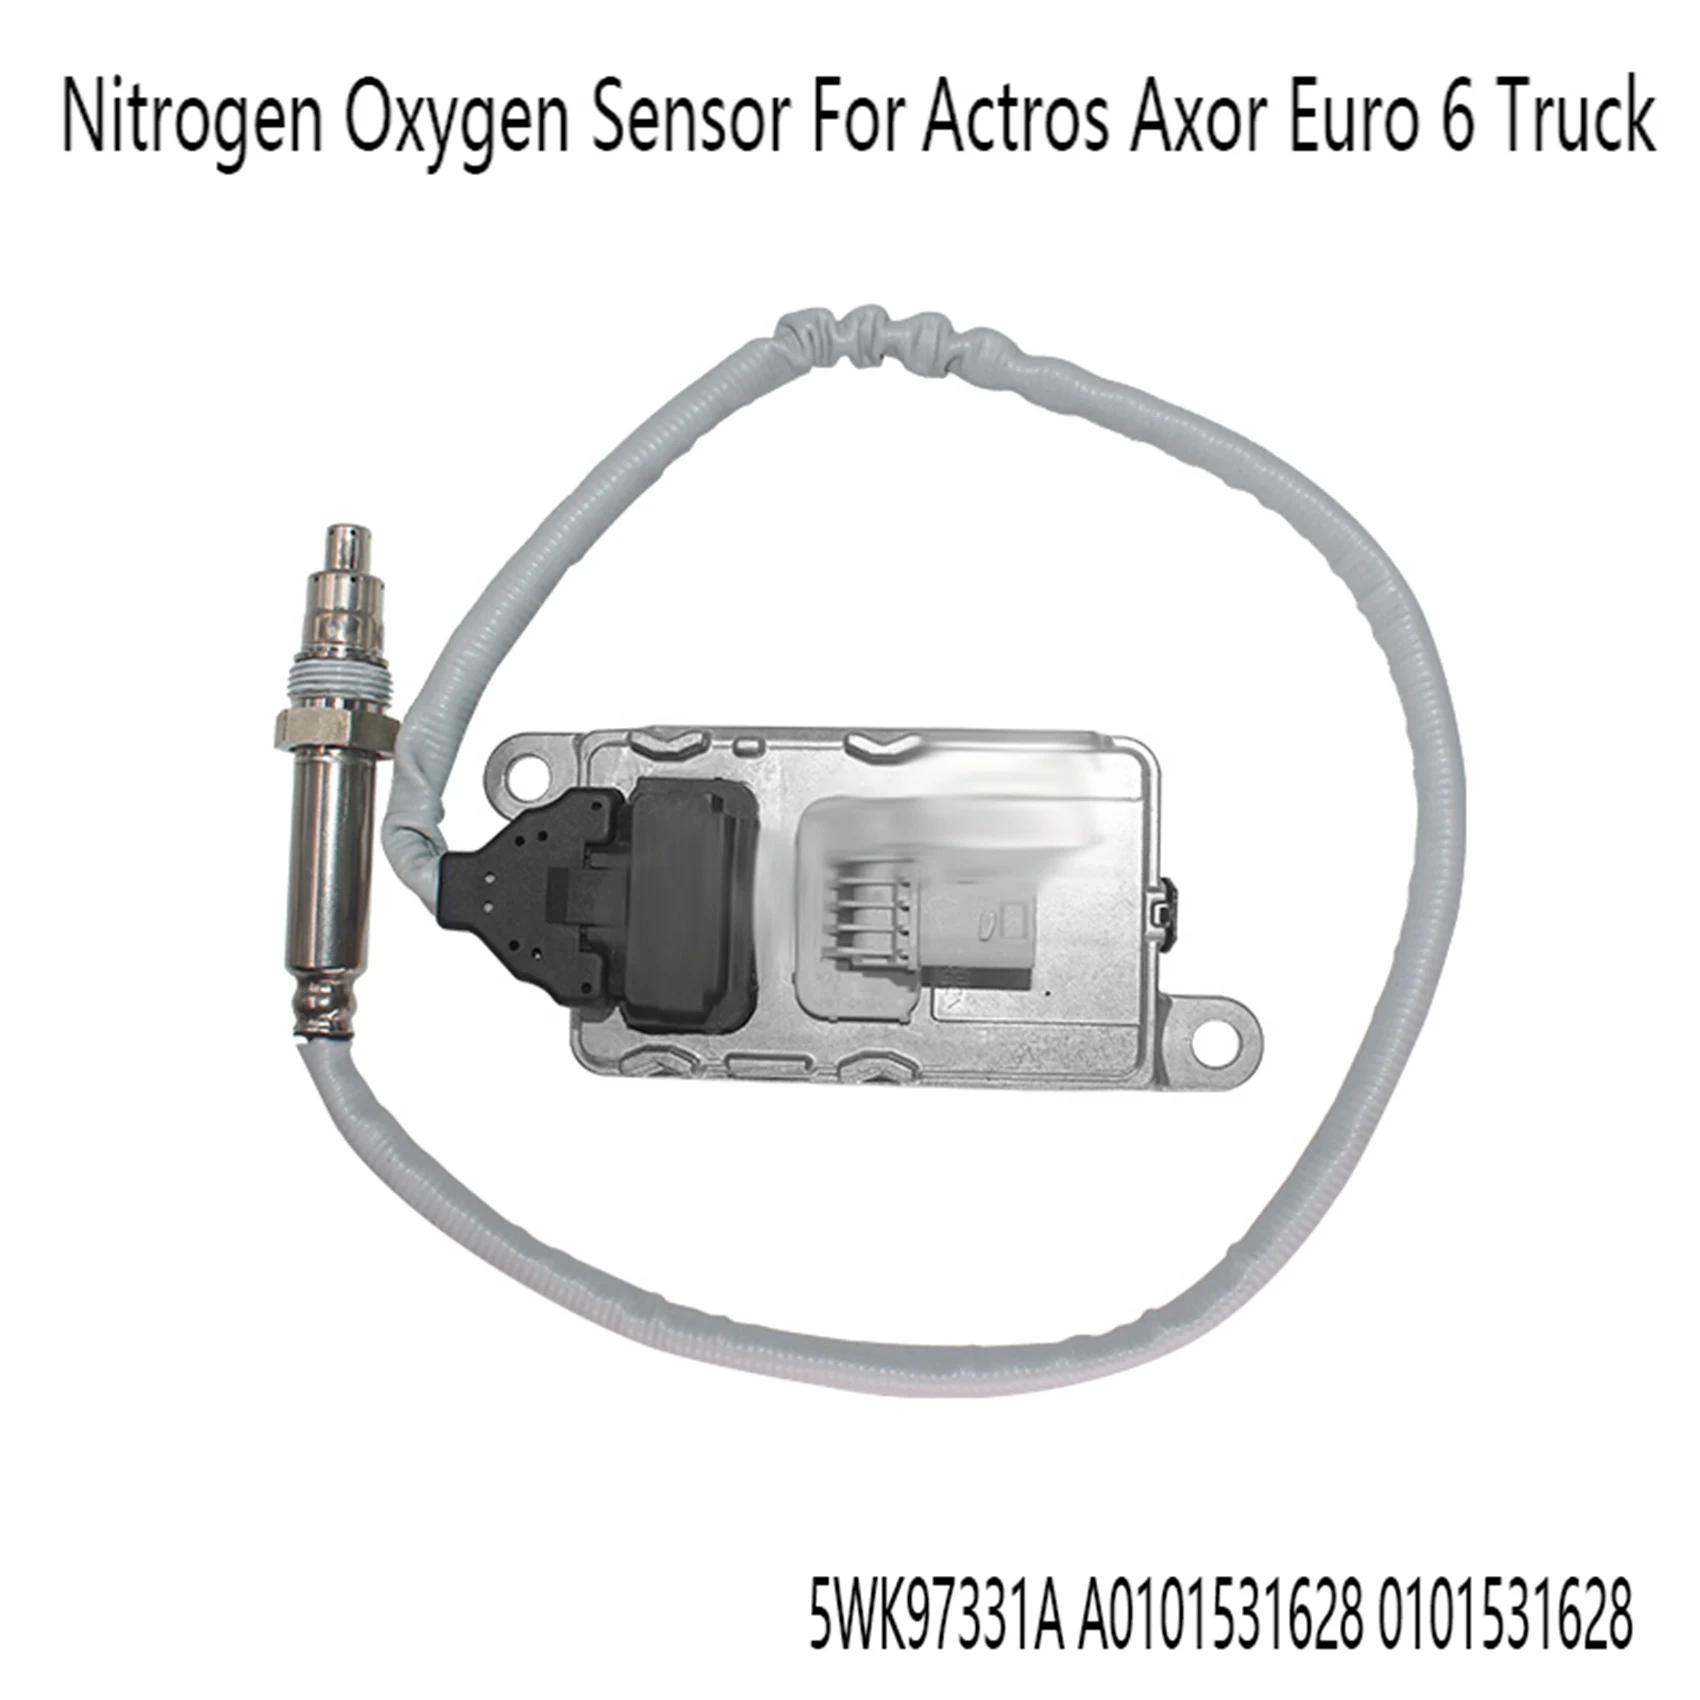 

Автомобильный кислородный датчик азота Nox 24 В для Mercedes Benz Actros Axor Euro 6 Truck 5WK97331A A0101531628 0101531628